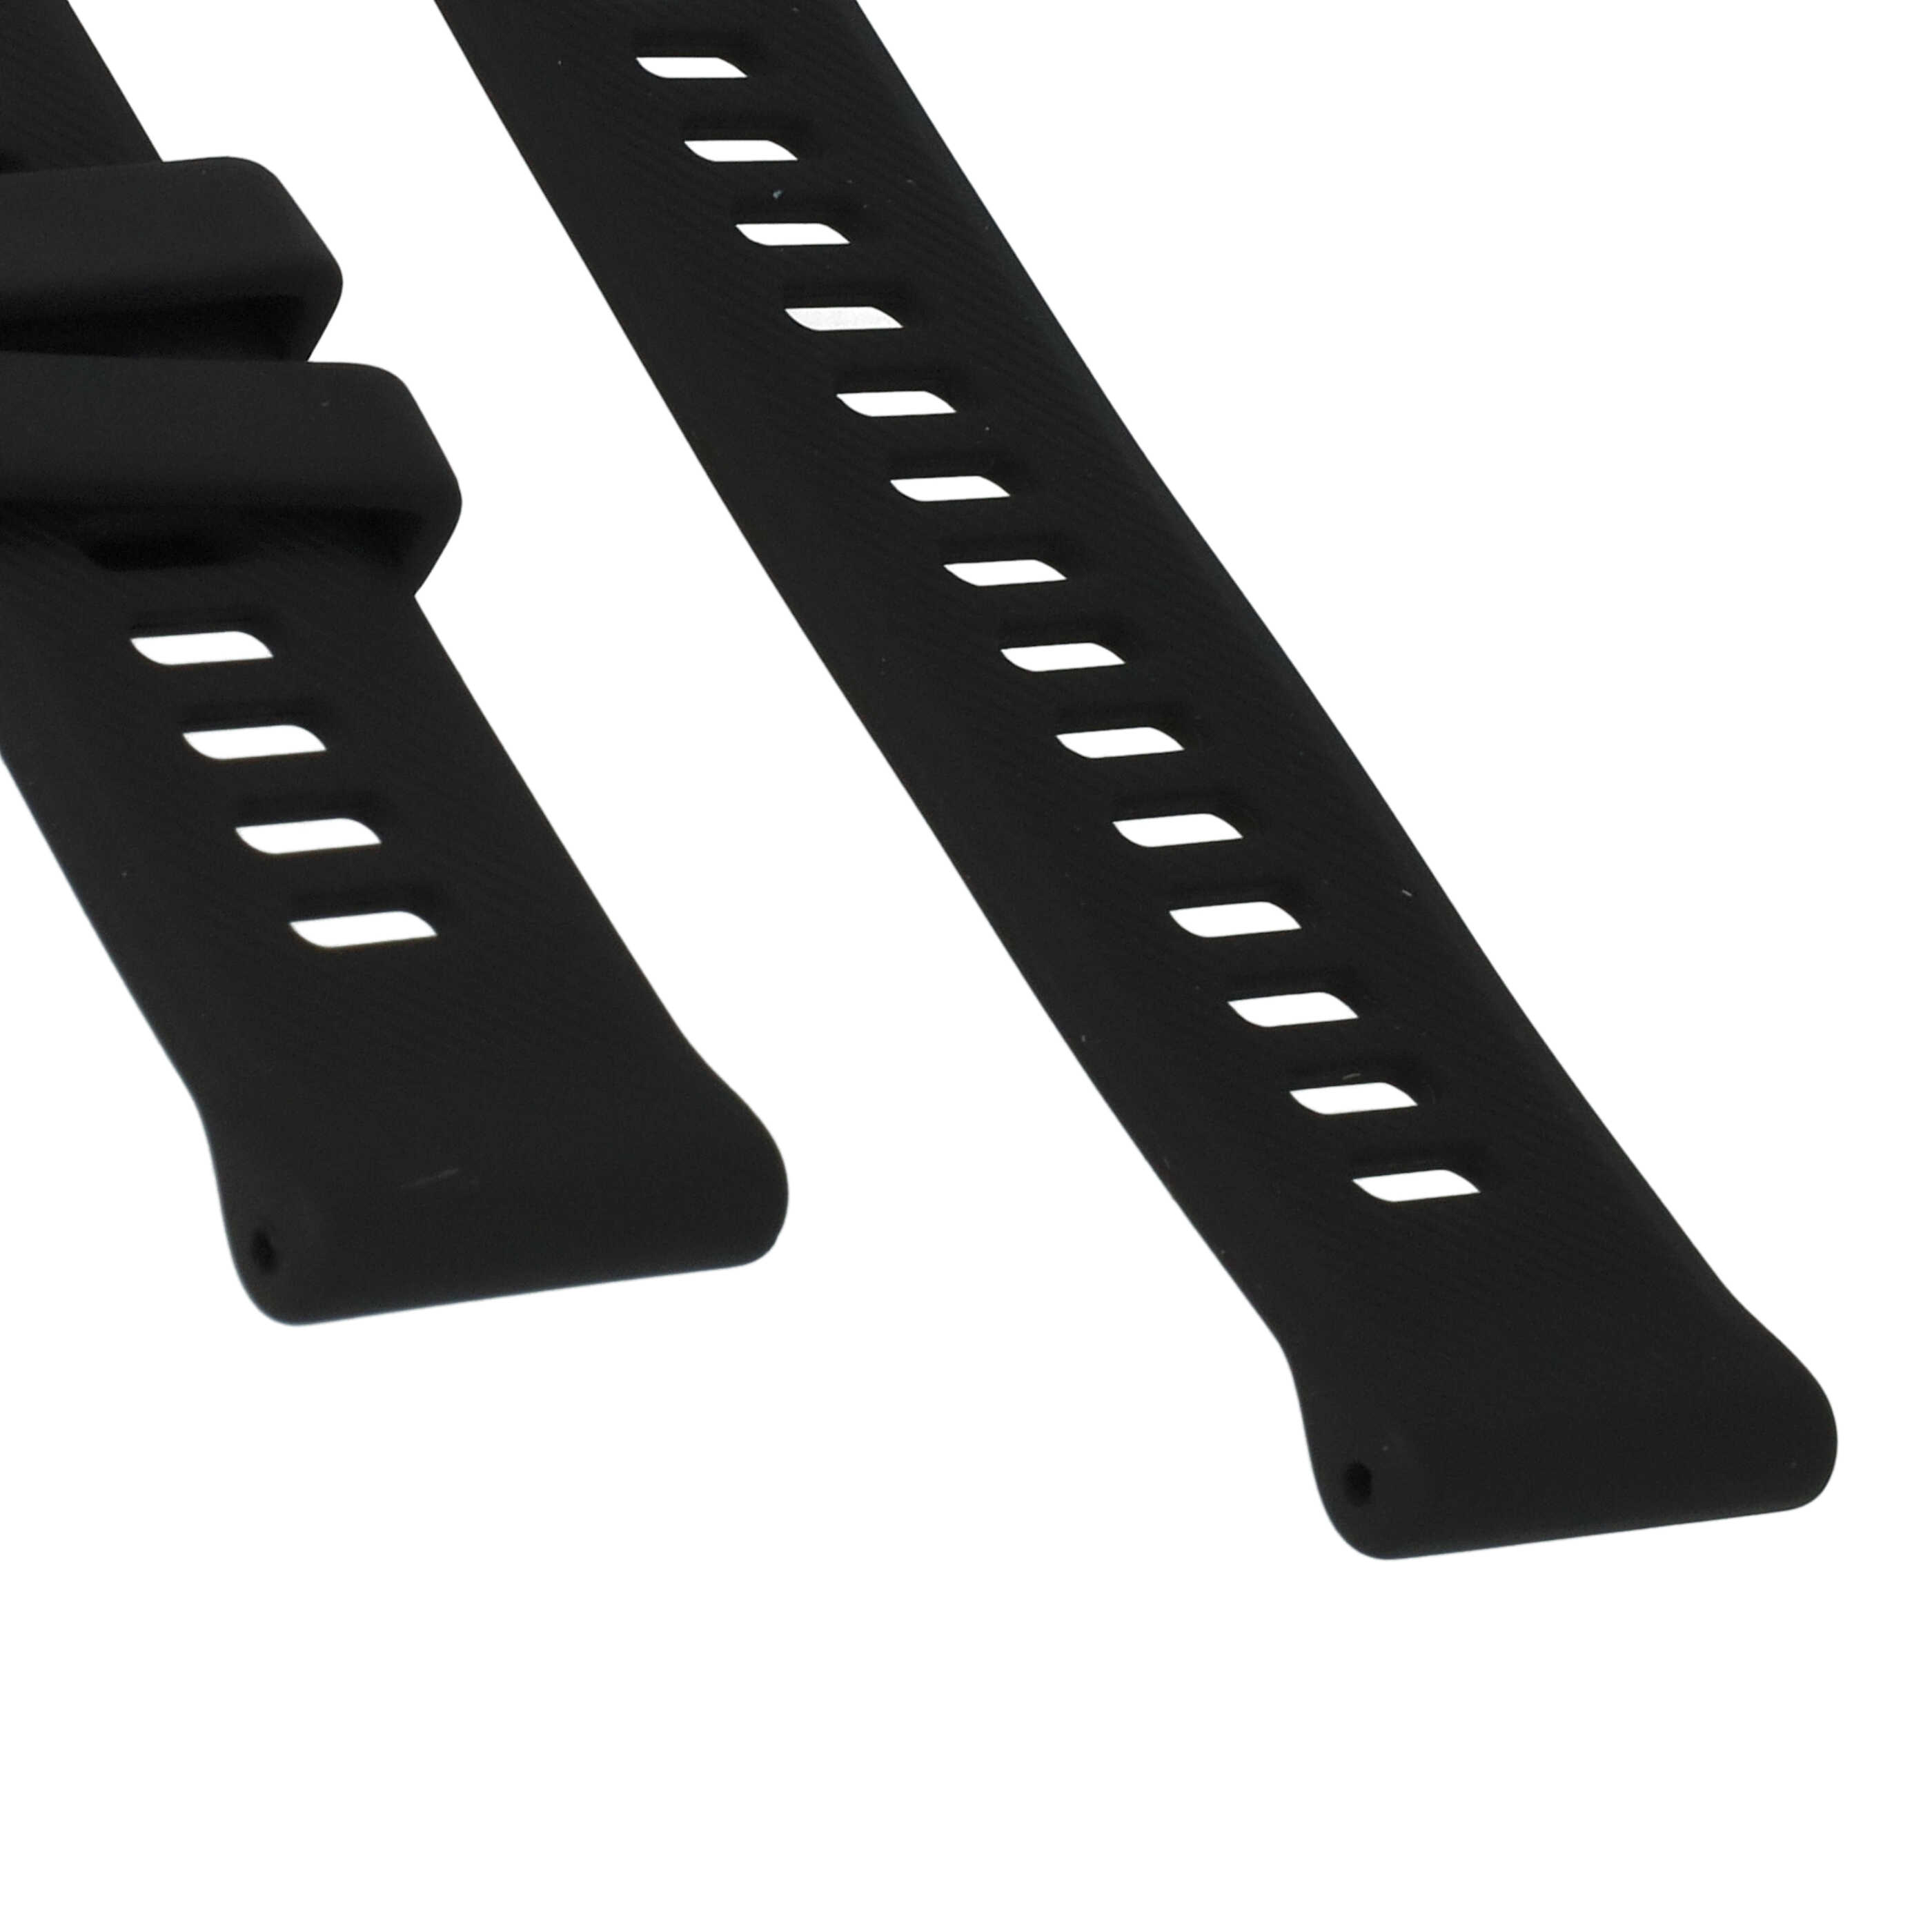 Armband für Garmin Forerunner Smartwatch - 9 + 12,2 cm lang, 22mm breit, Silikon, schwarz